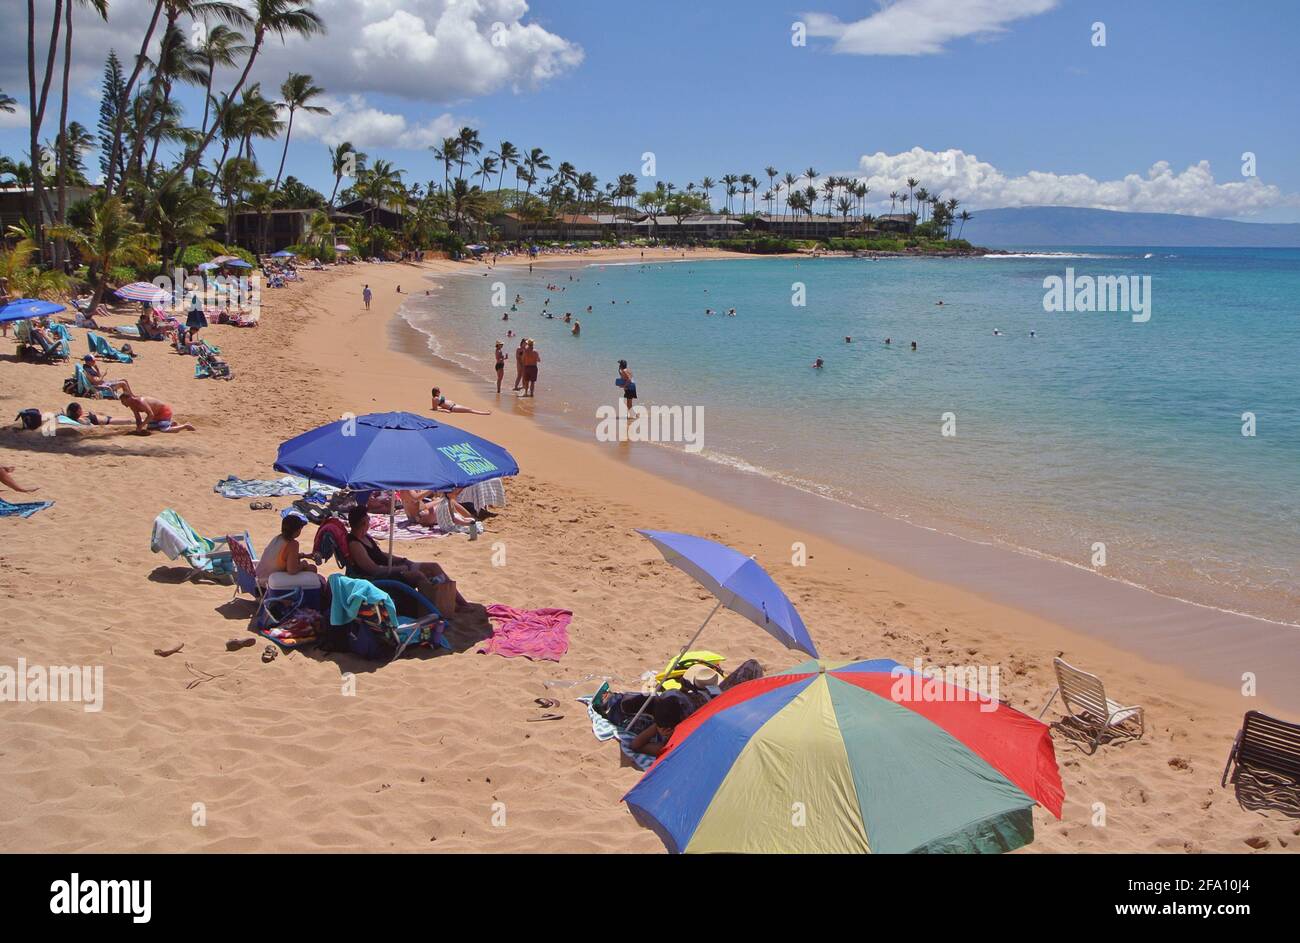 los turistas se relajan bajo sombrillas y nadan y juegan en el Playa arenosa y soleada kaanapali al oeste de la ciudad de Lahaina En la isla de Maui Hawaii usa Foto de stock